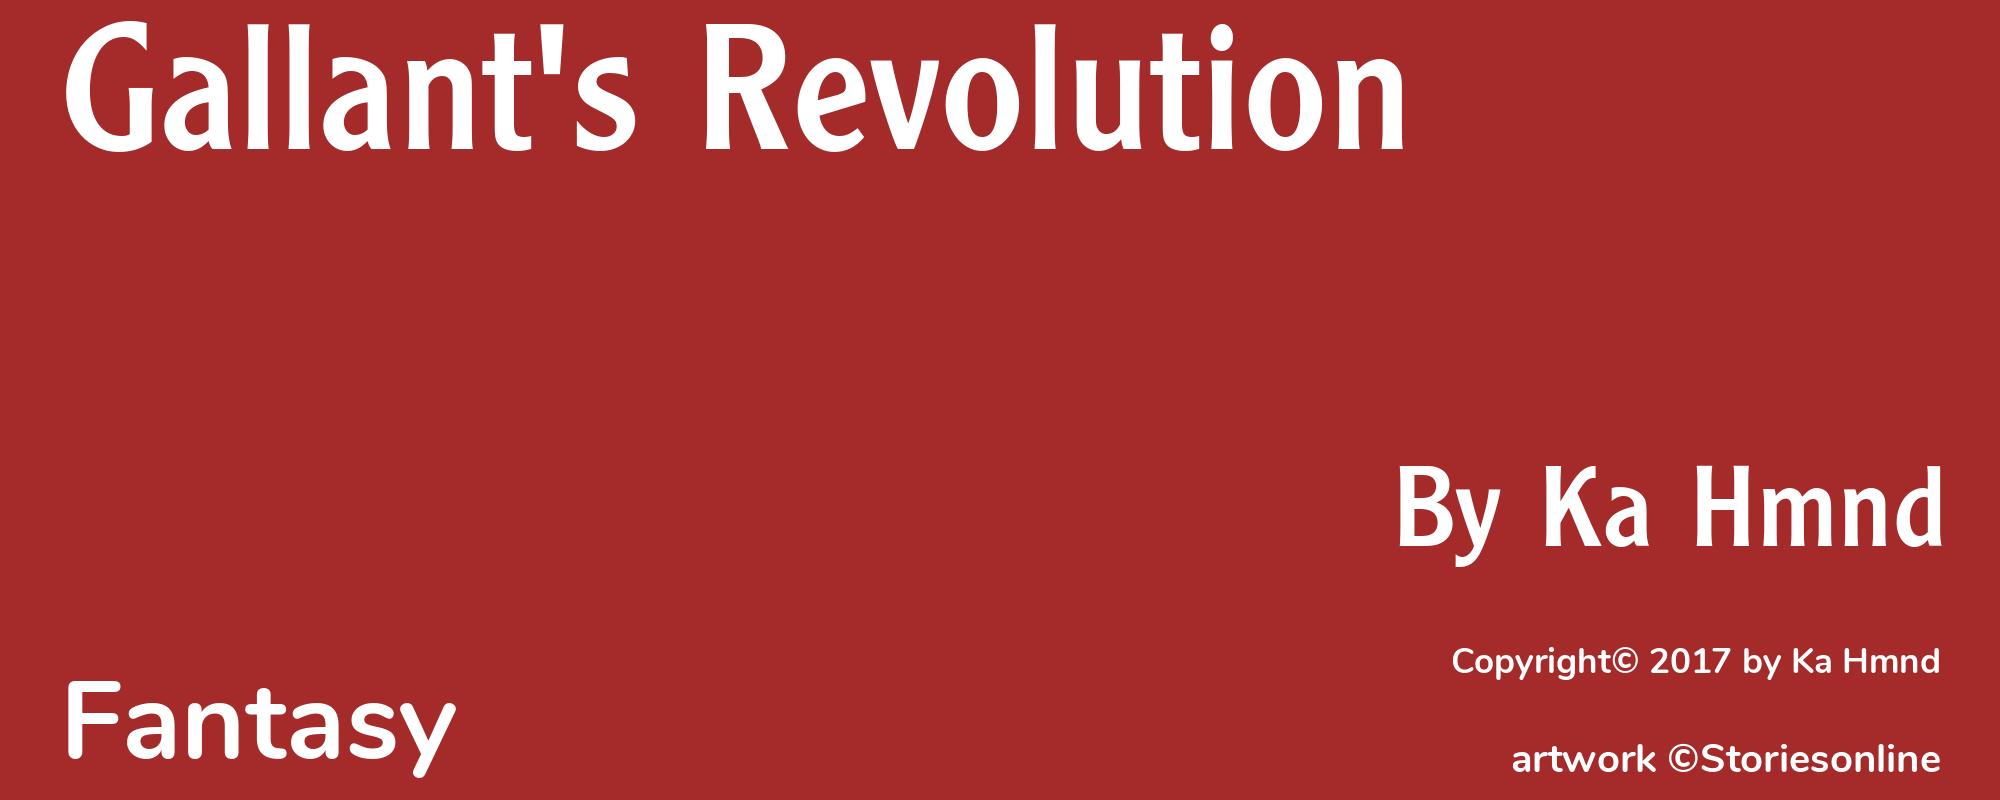 Gallant's Revolution - Cover